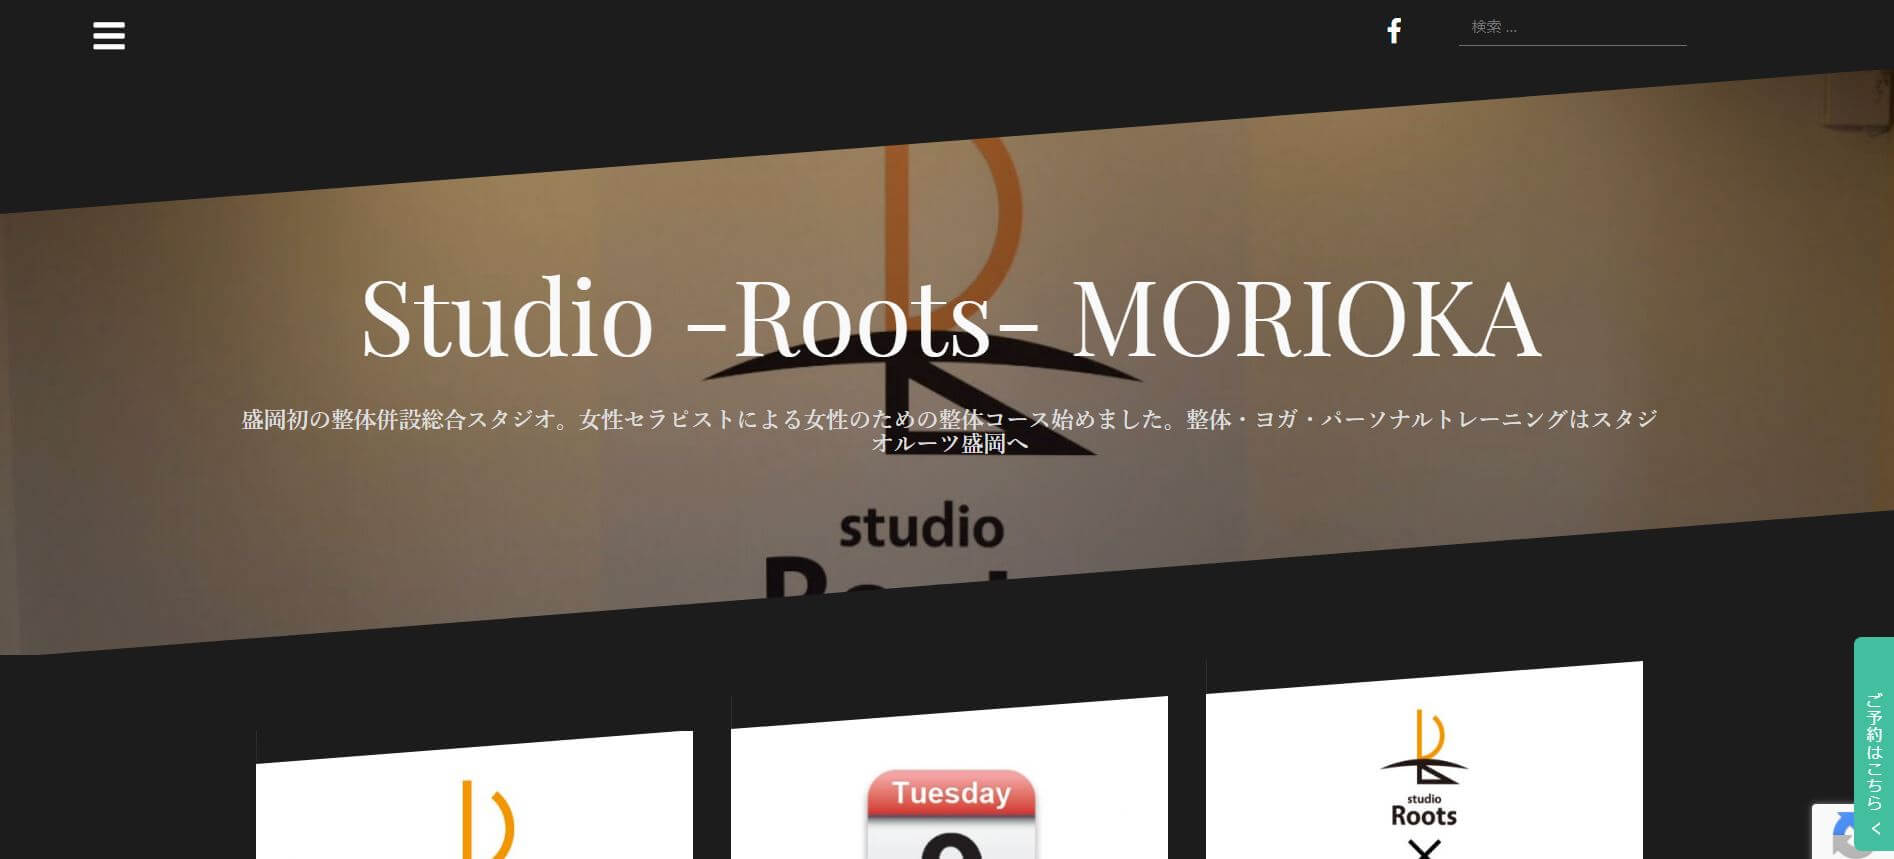 Studio -Roots- MORIOKA